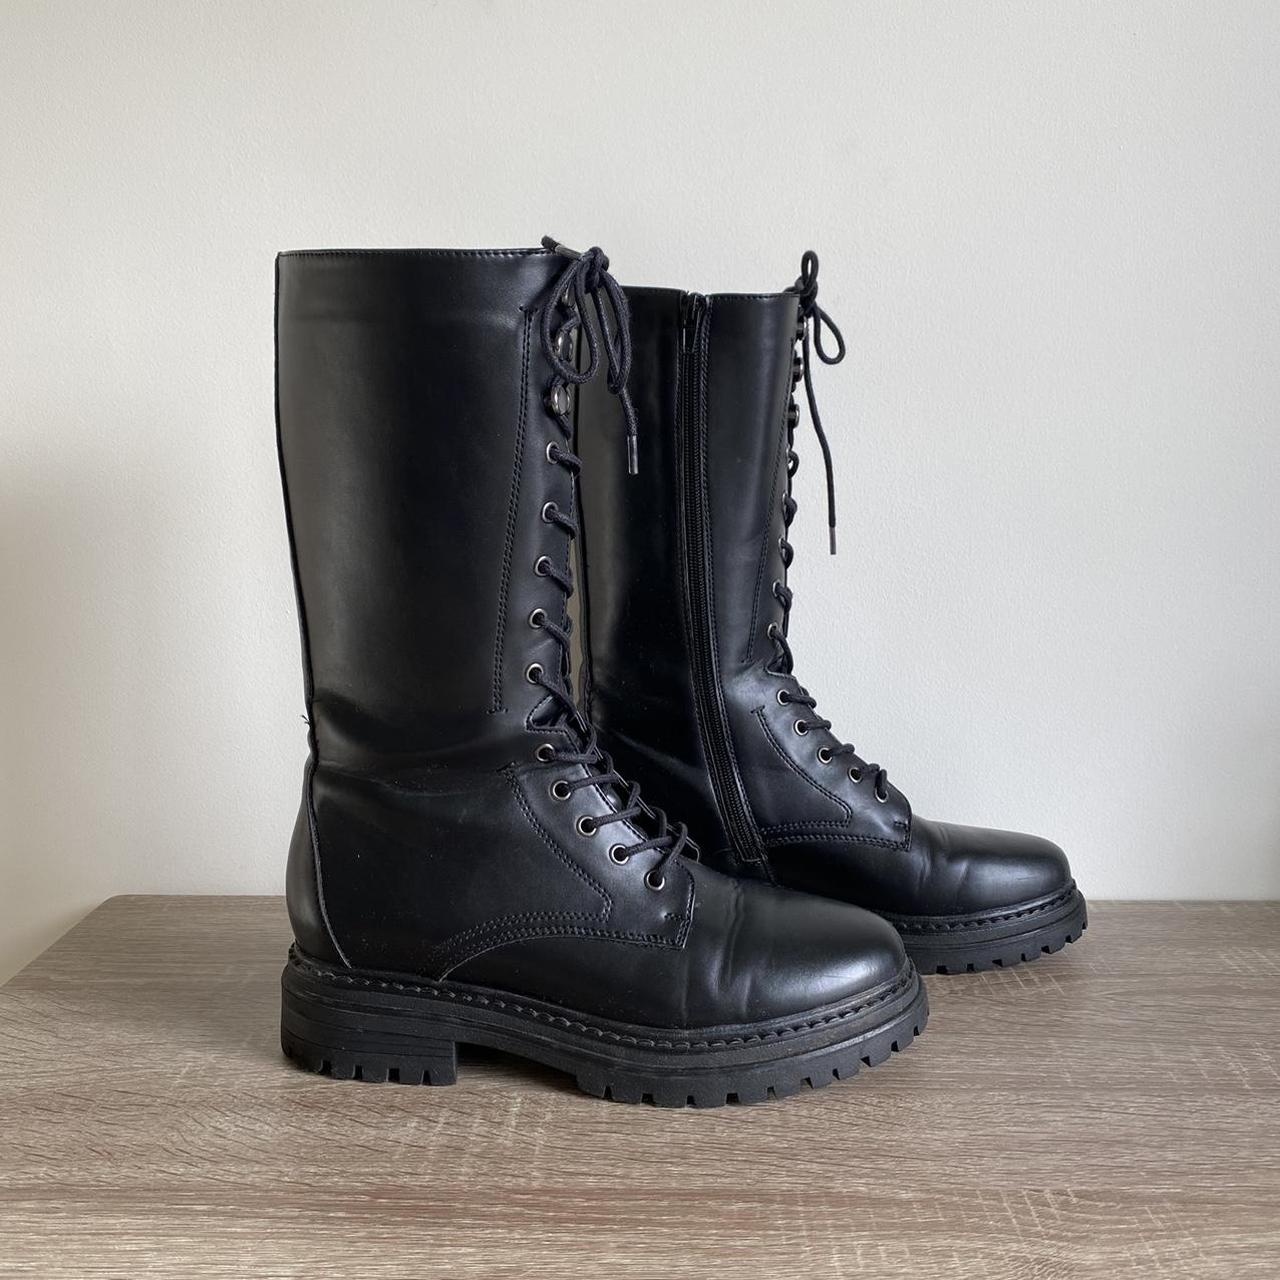 Womens black boots size UK 7. From Deichmann... - Depop